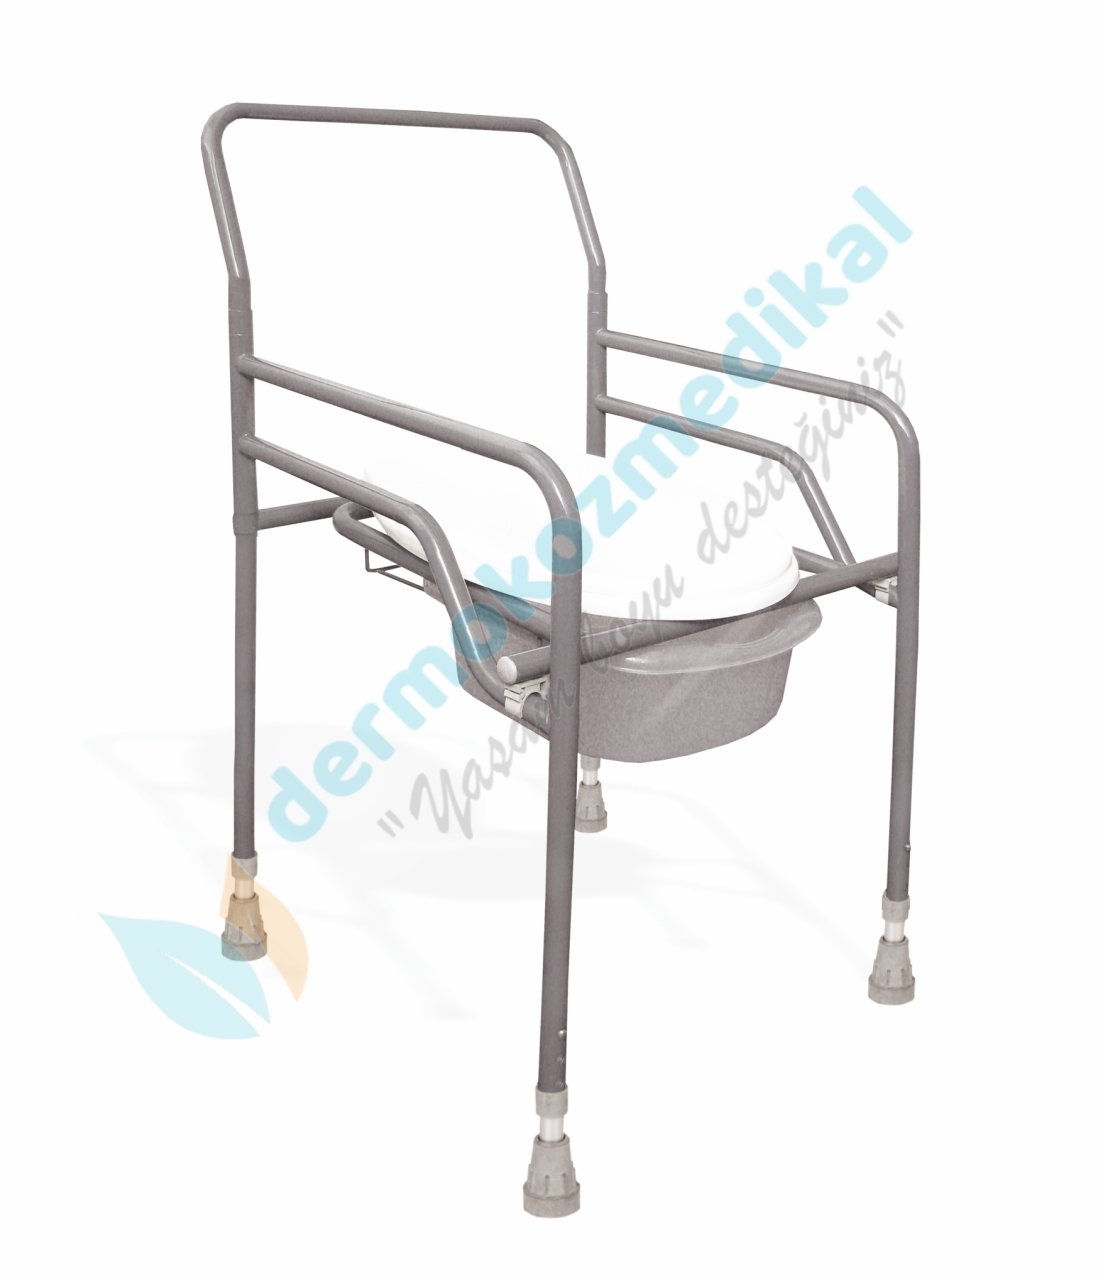 Orthocare Katlanır Klozet Yükseltici Sandalye 8215 Shower Chair Compact